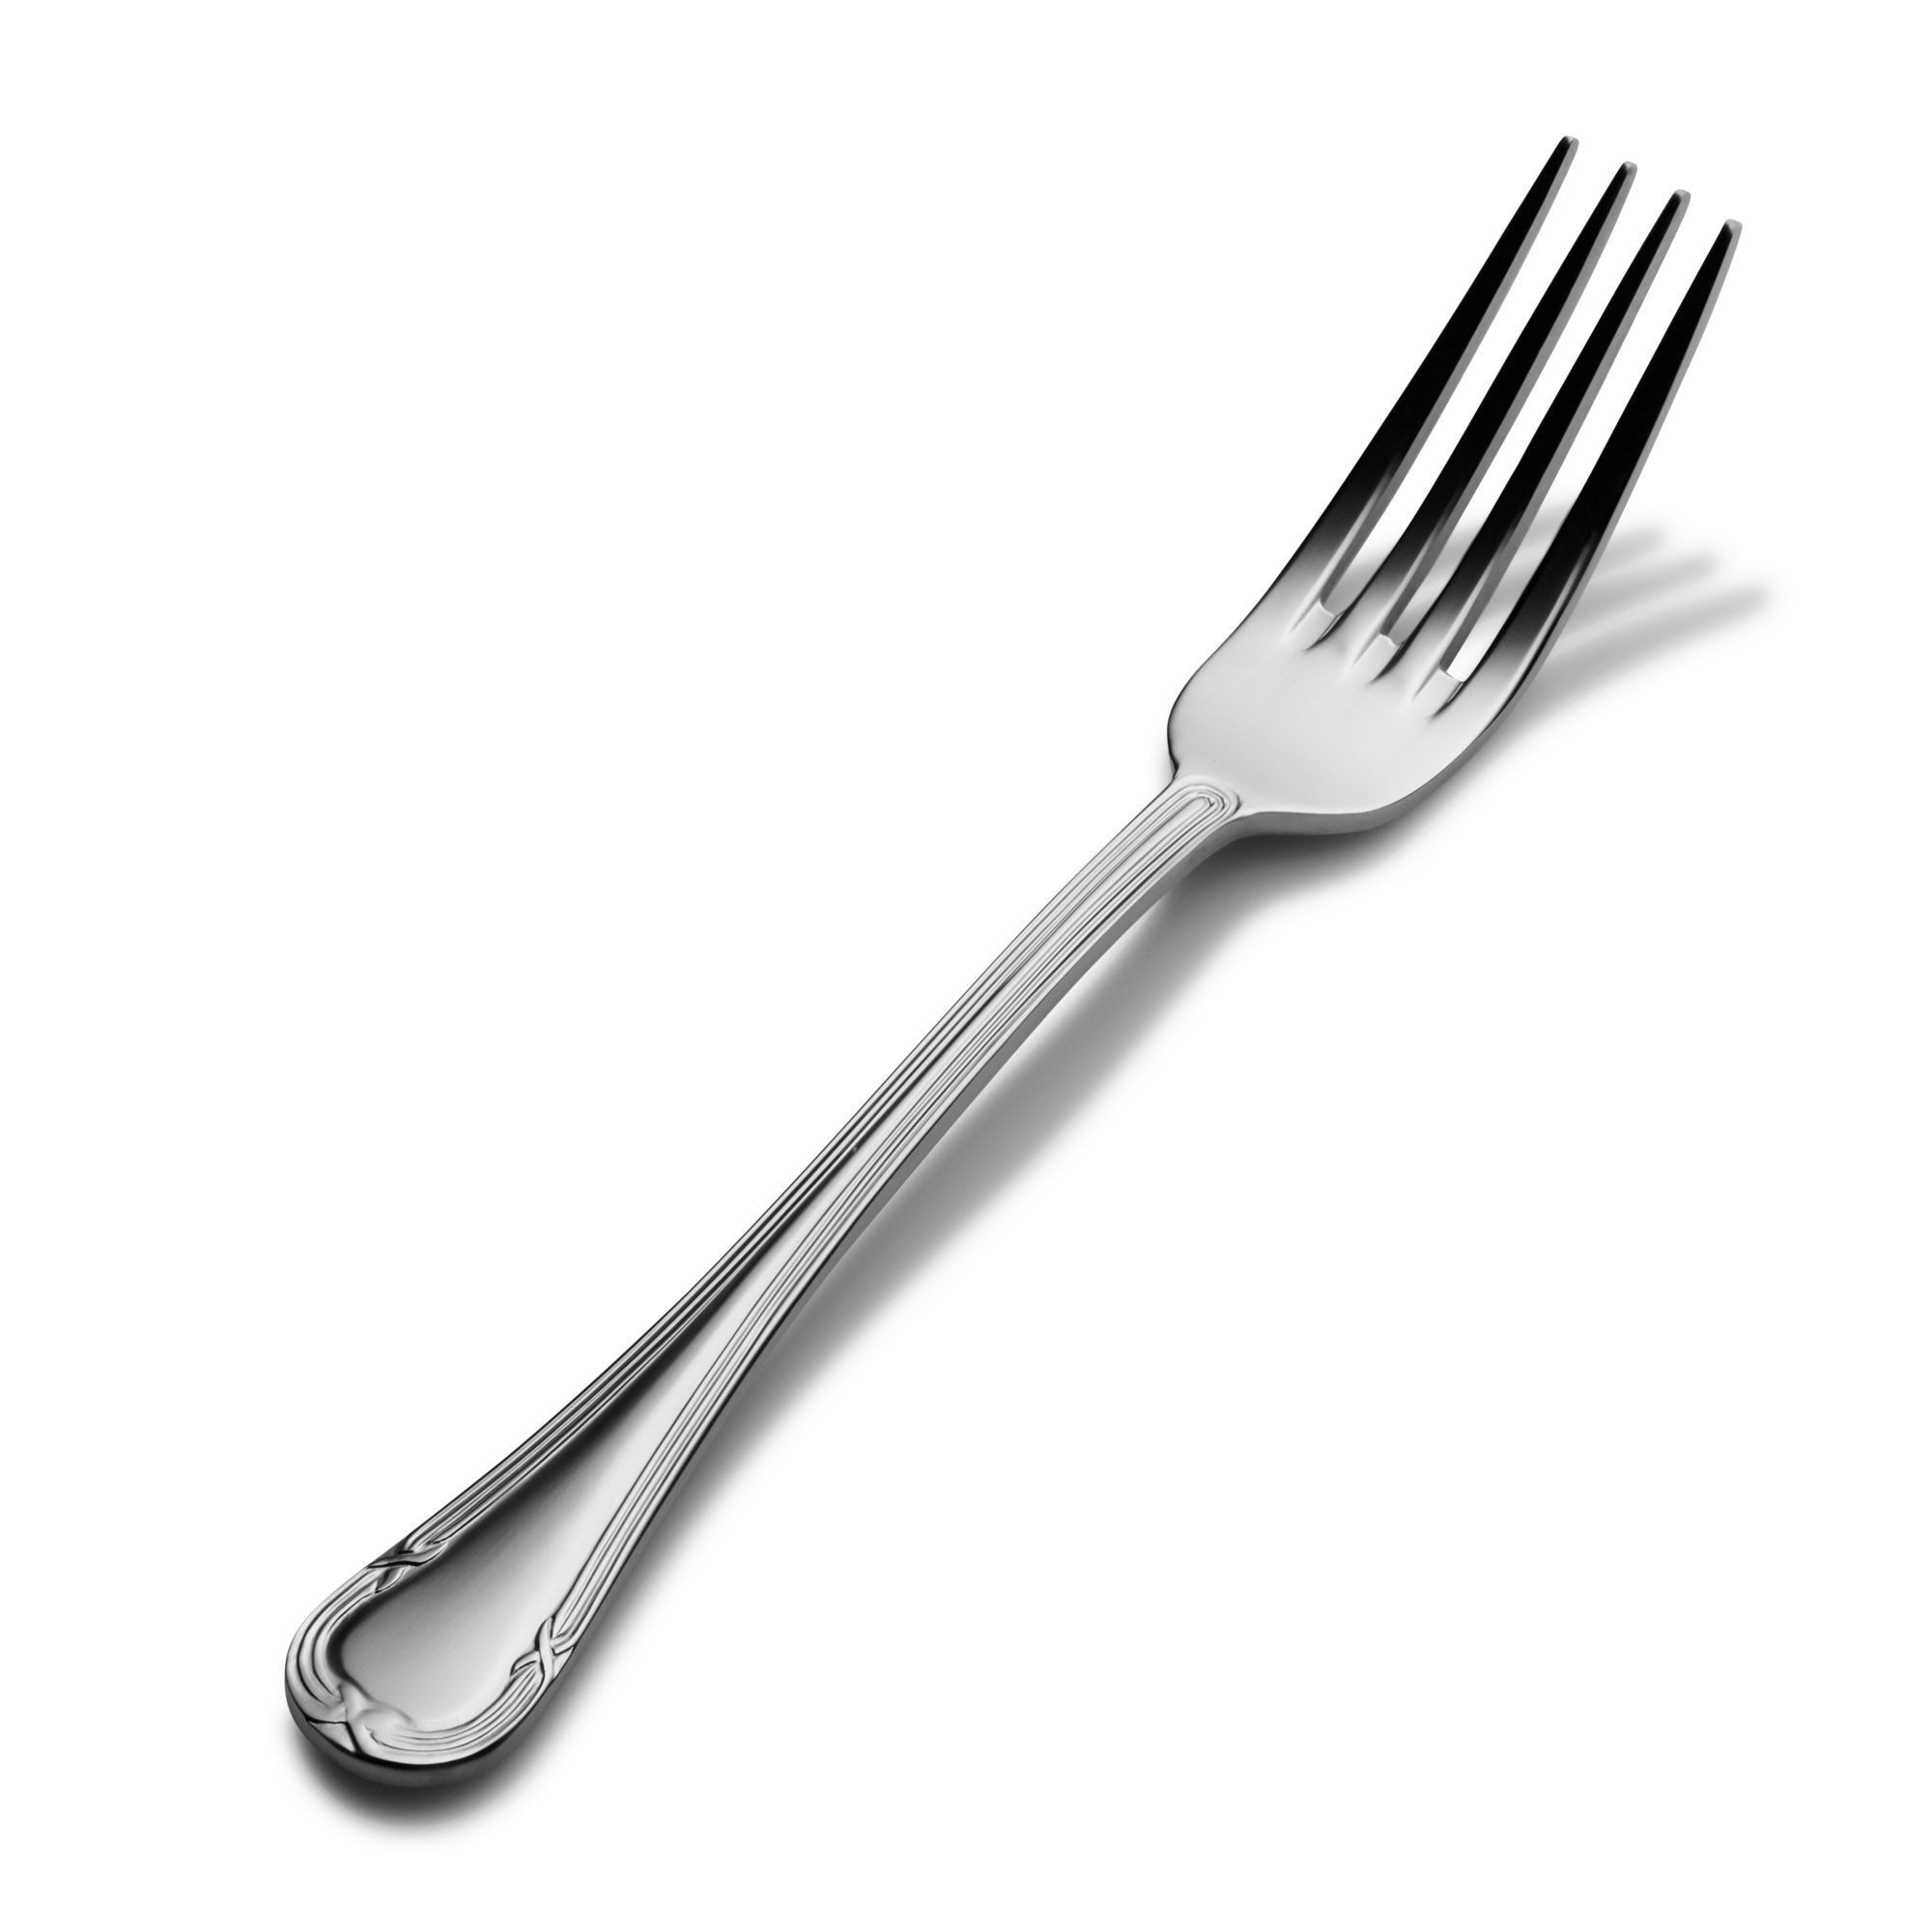 Bon Chef S805 Florence 18/8 Stainless Steel Regular Dinner Fork